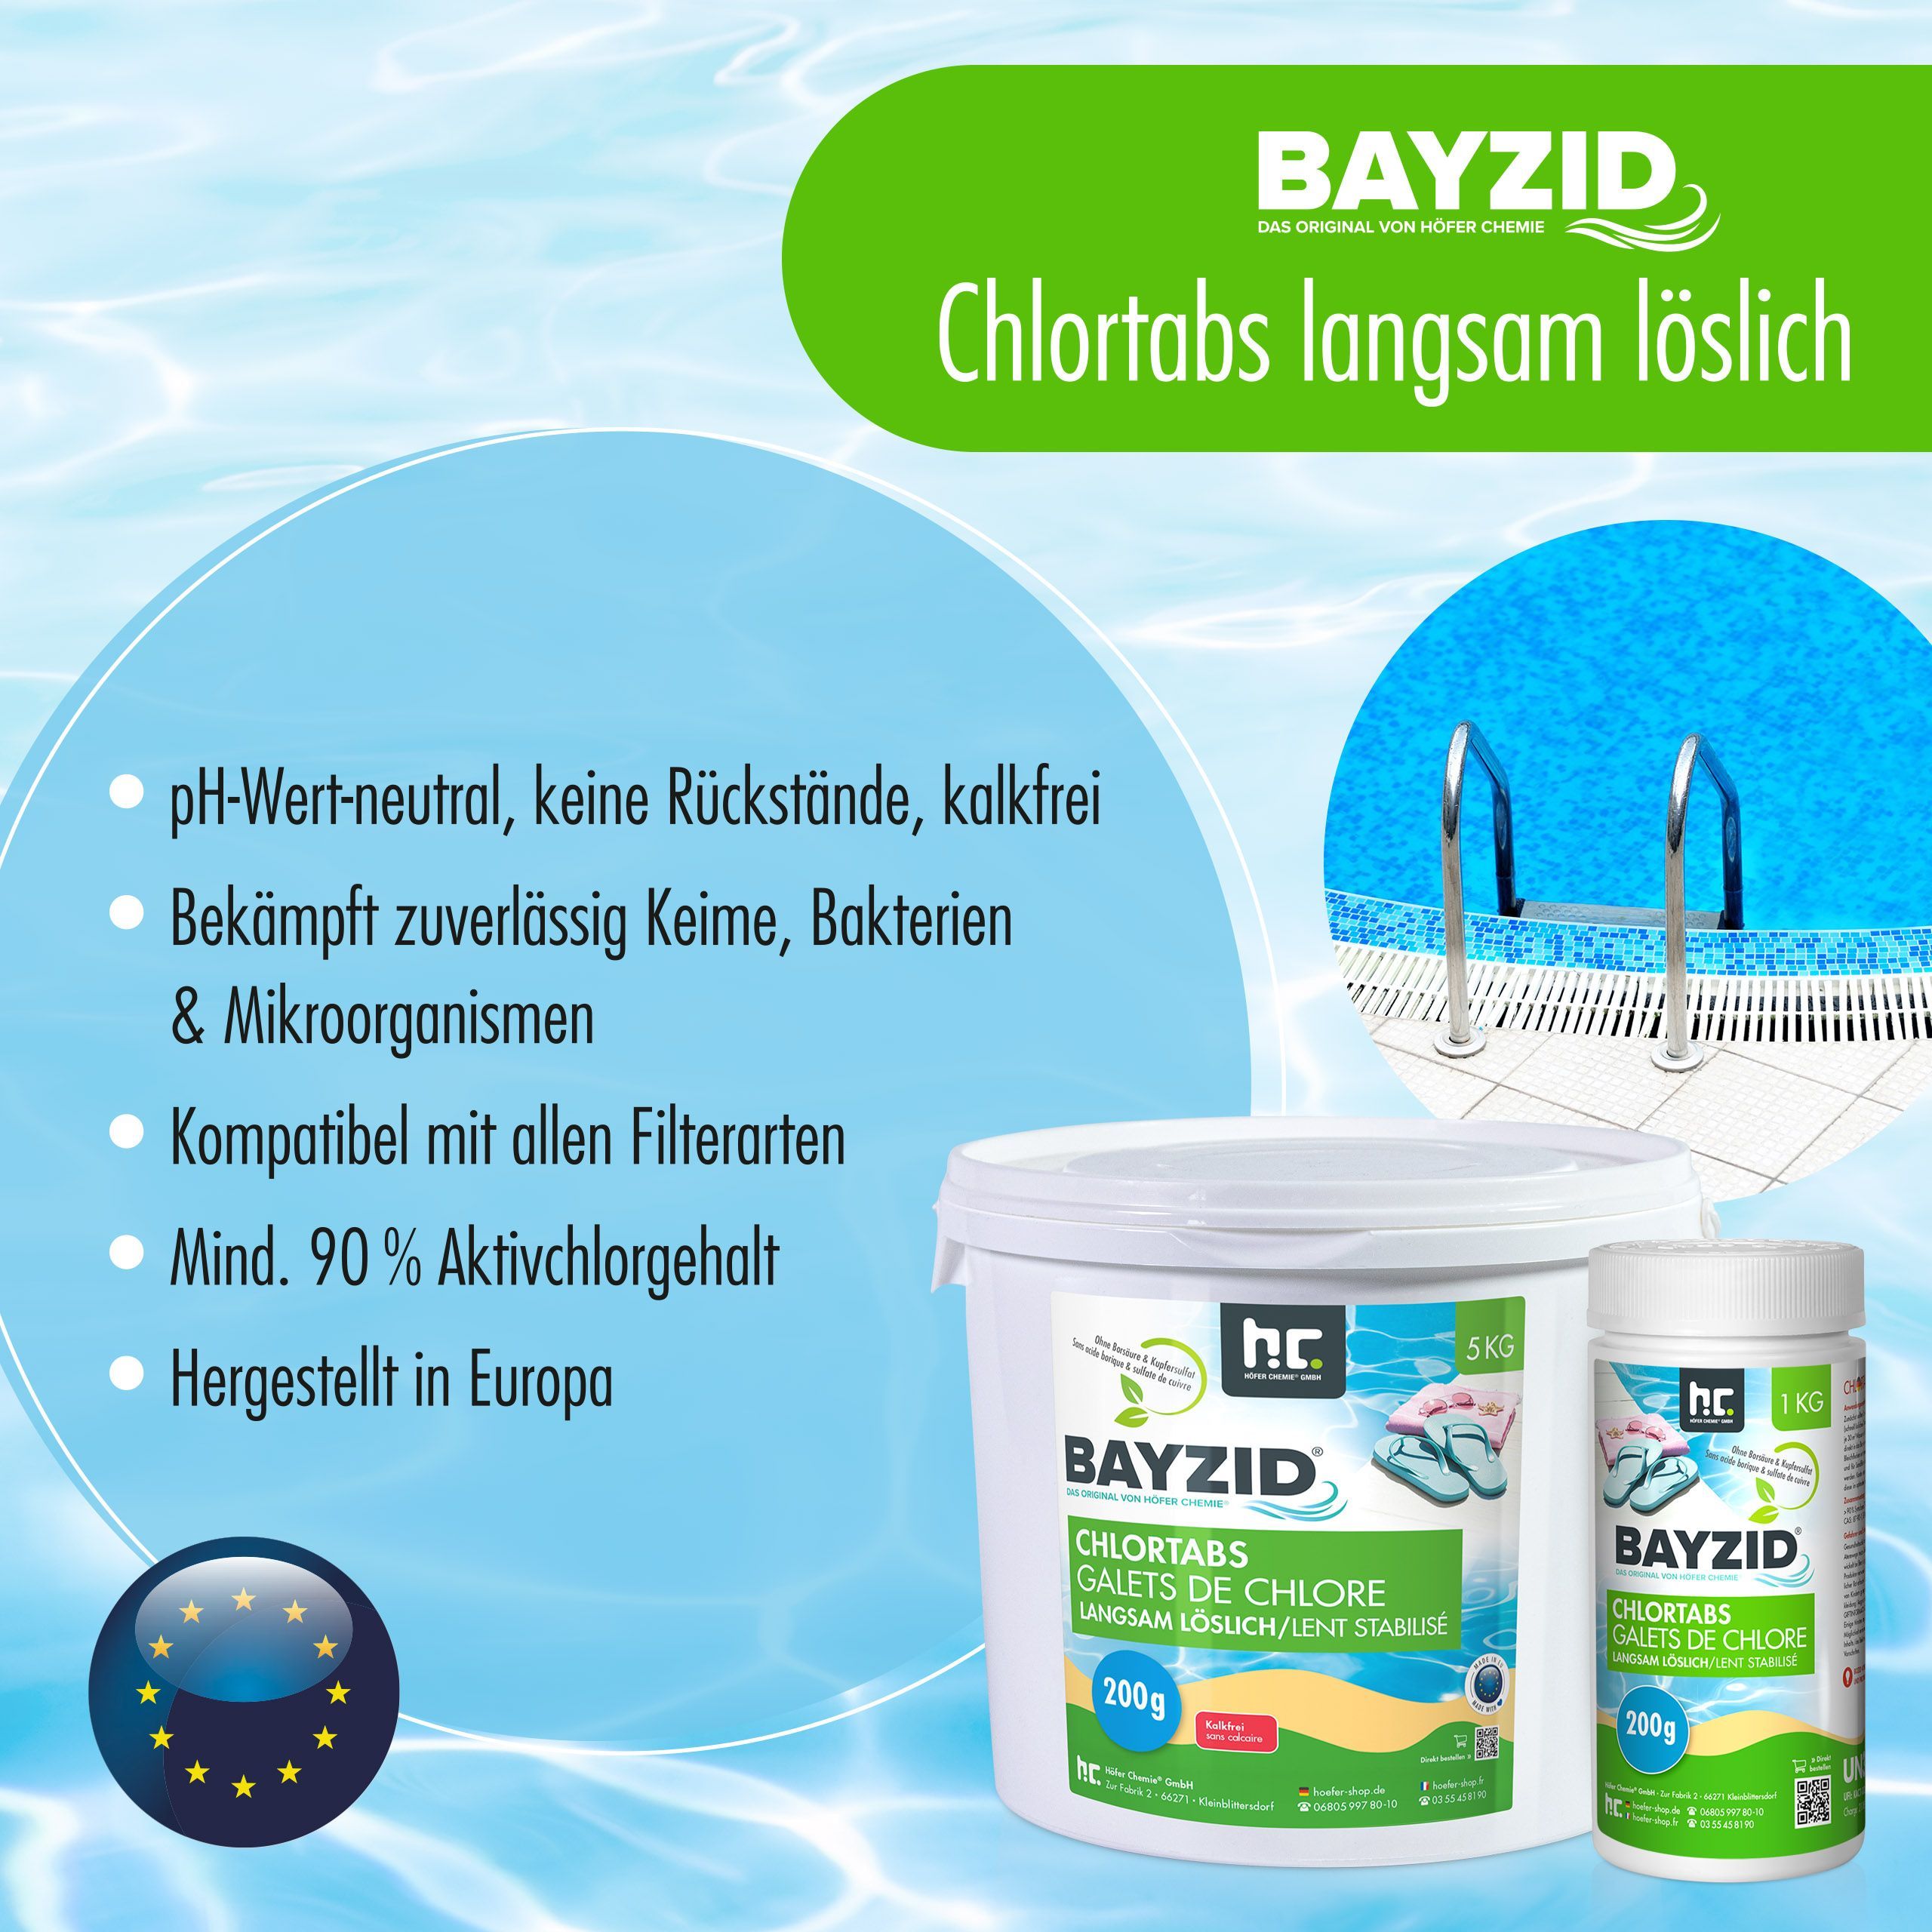 5 kg BAYZID® Galets de chlore (200g) à dissolution lente